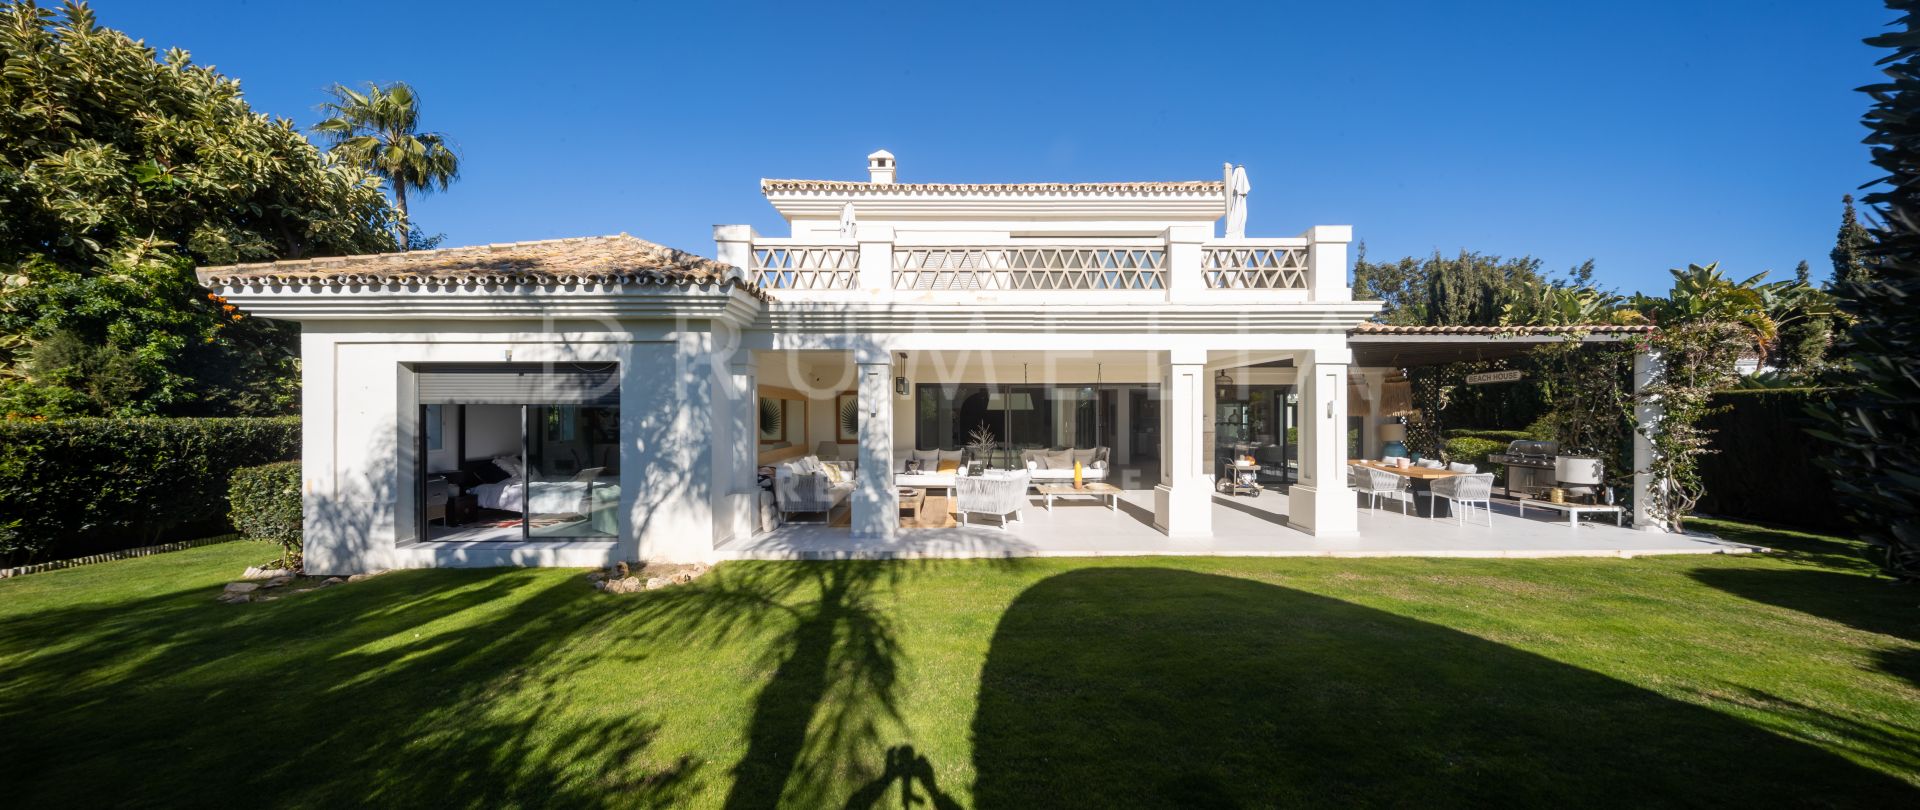 Impresionante villa de lujo con estilo mediterráneo y detalles modernos en Casasola, Estepona